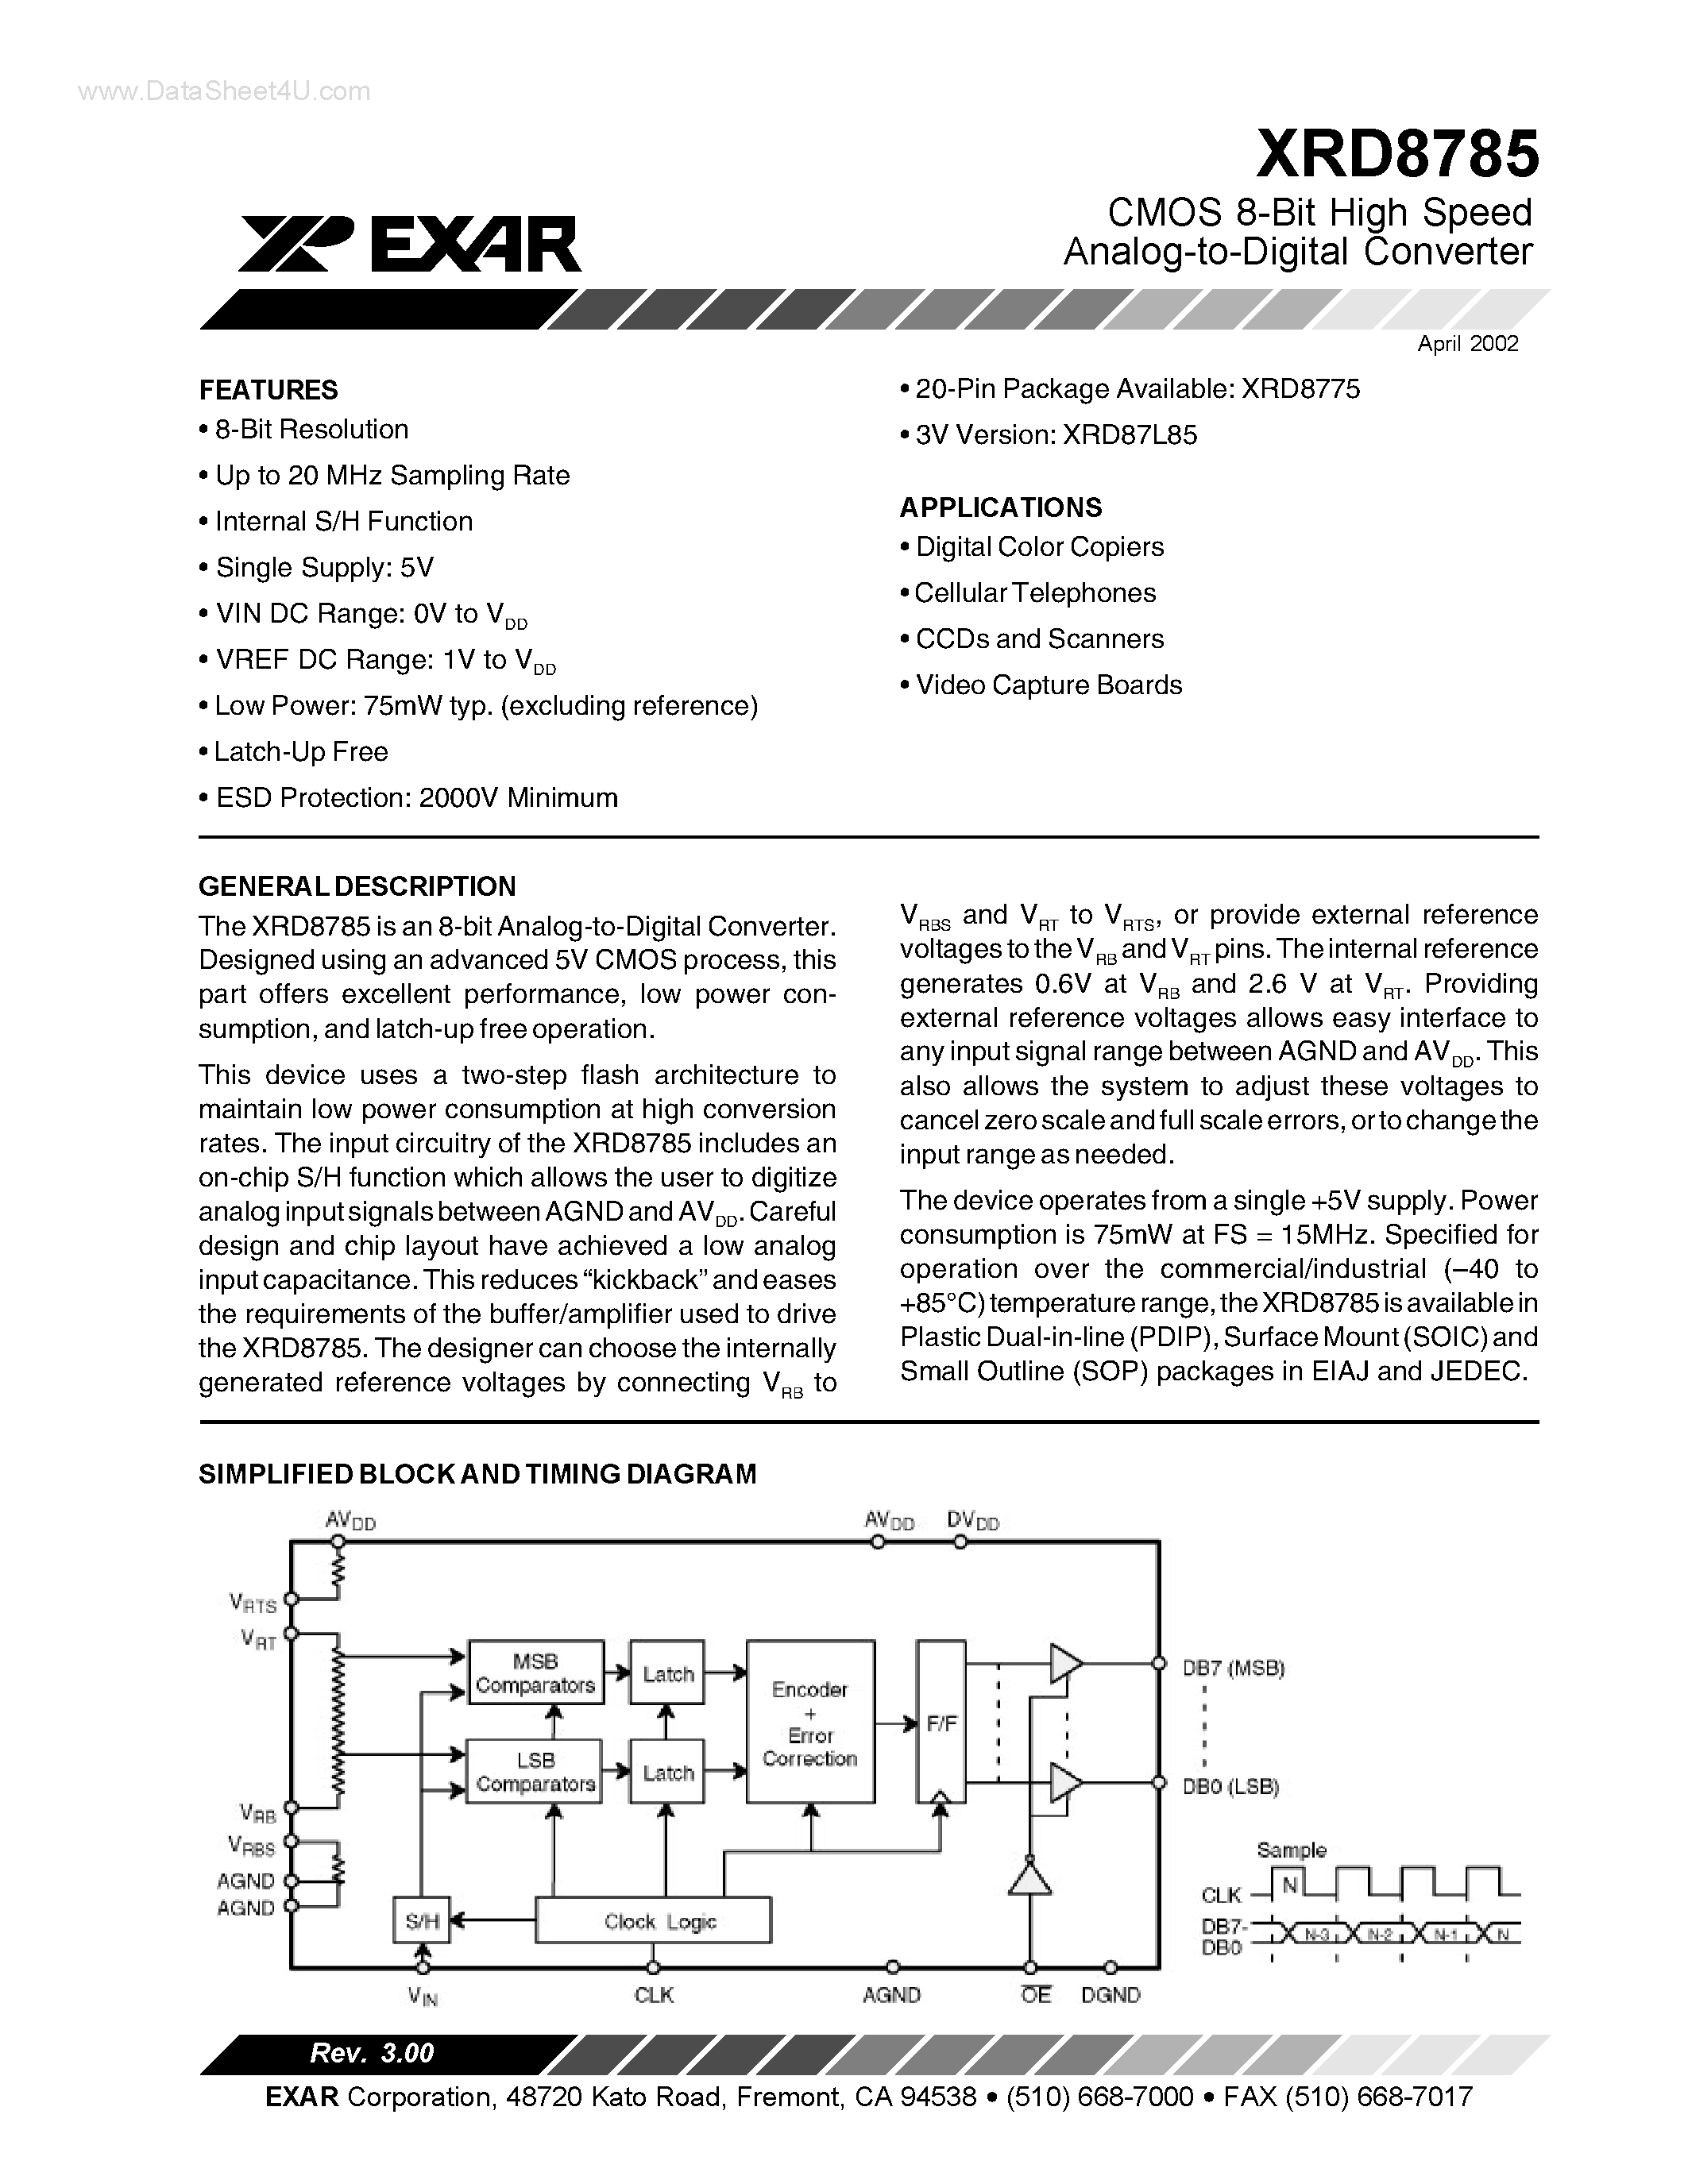 Datasheet XRD8785 - CMOS 8-Bit High Speed Analog-to-Digital Converter page 1